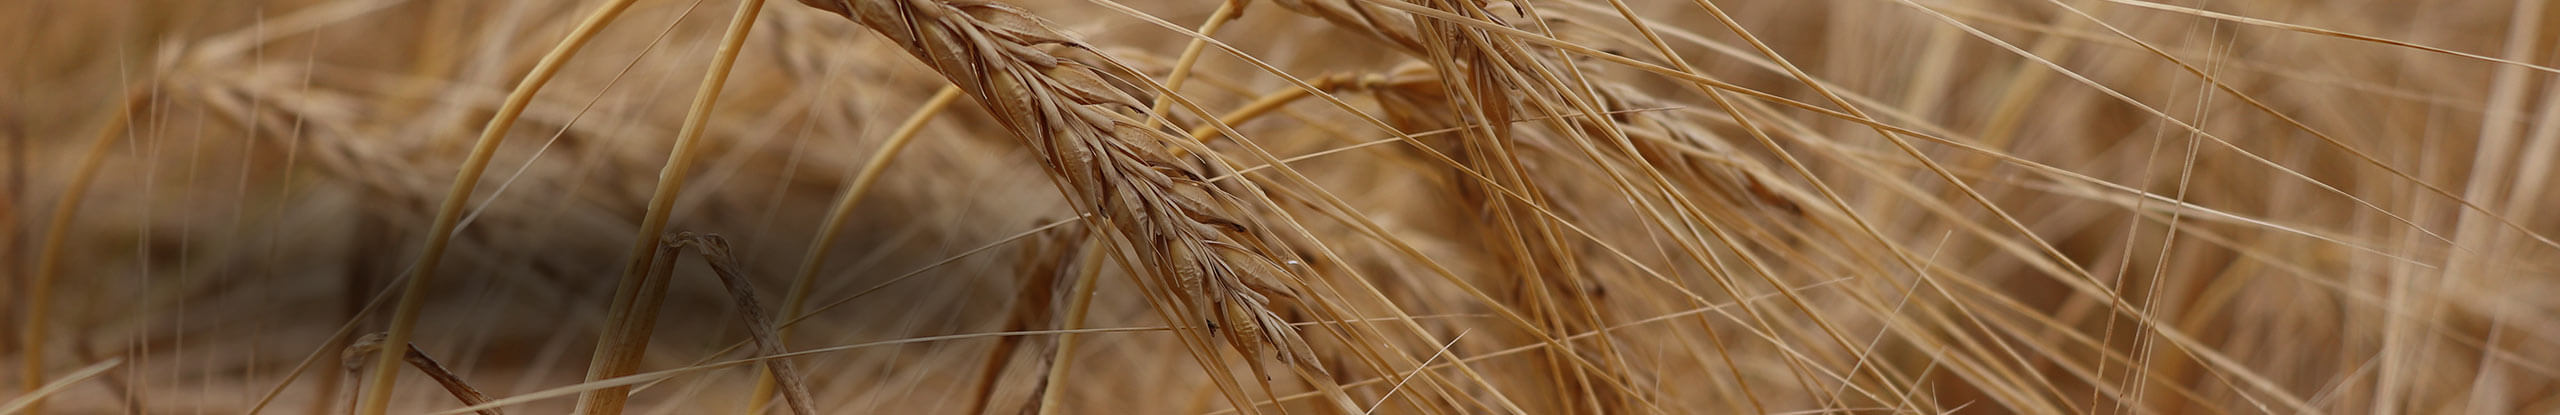 Maximizing feed barley yield while minimizing lodging